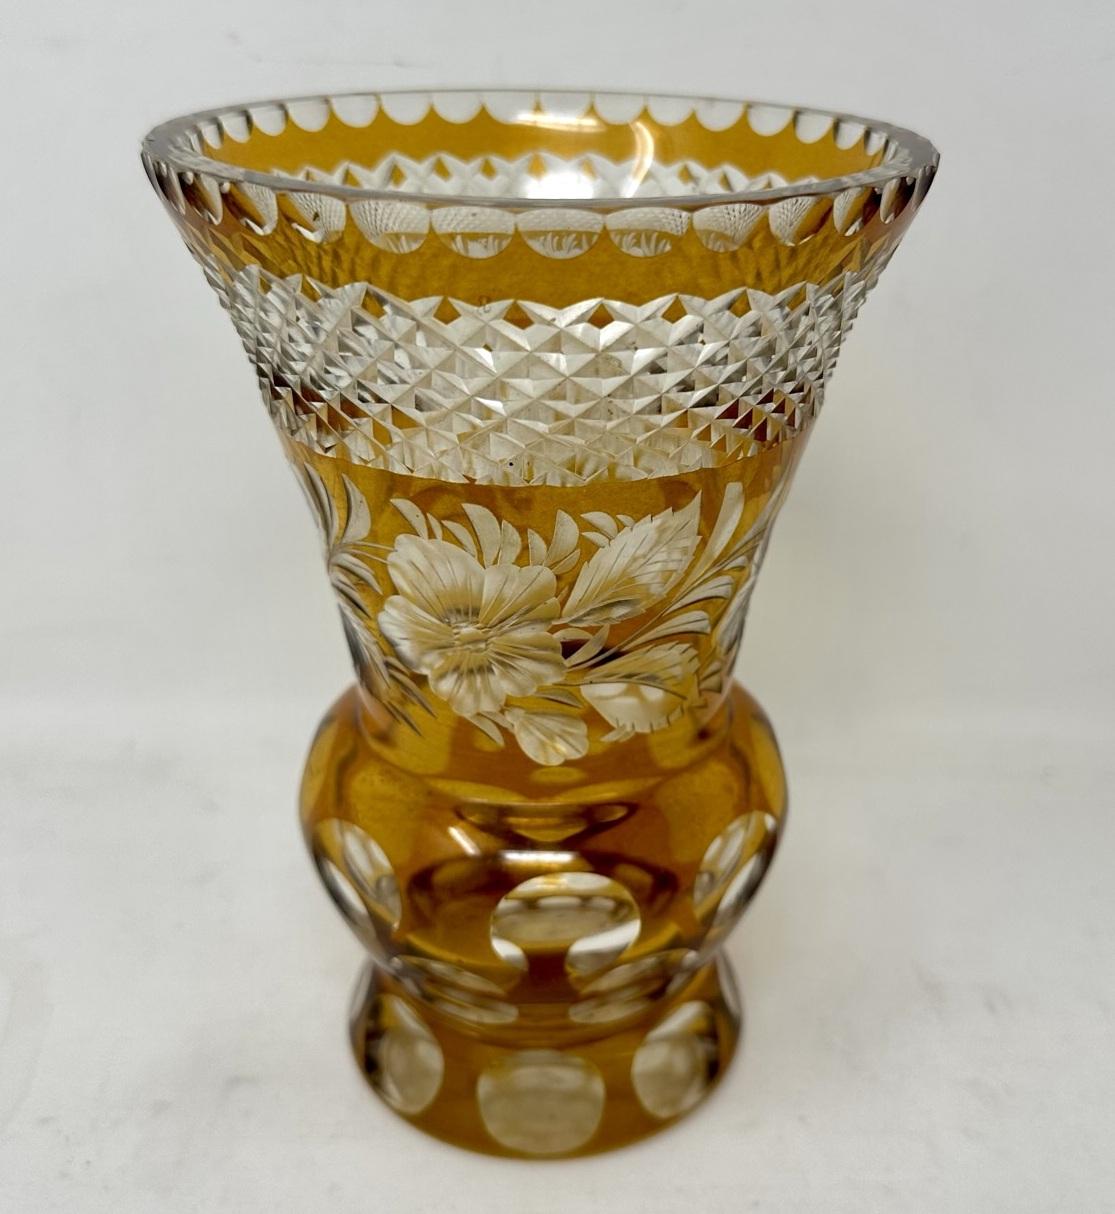 Czech Antique Vintage Edwardian Bohemian Handcut Crystal Amber Vase Bowl Centerpiece